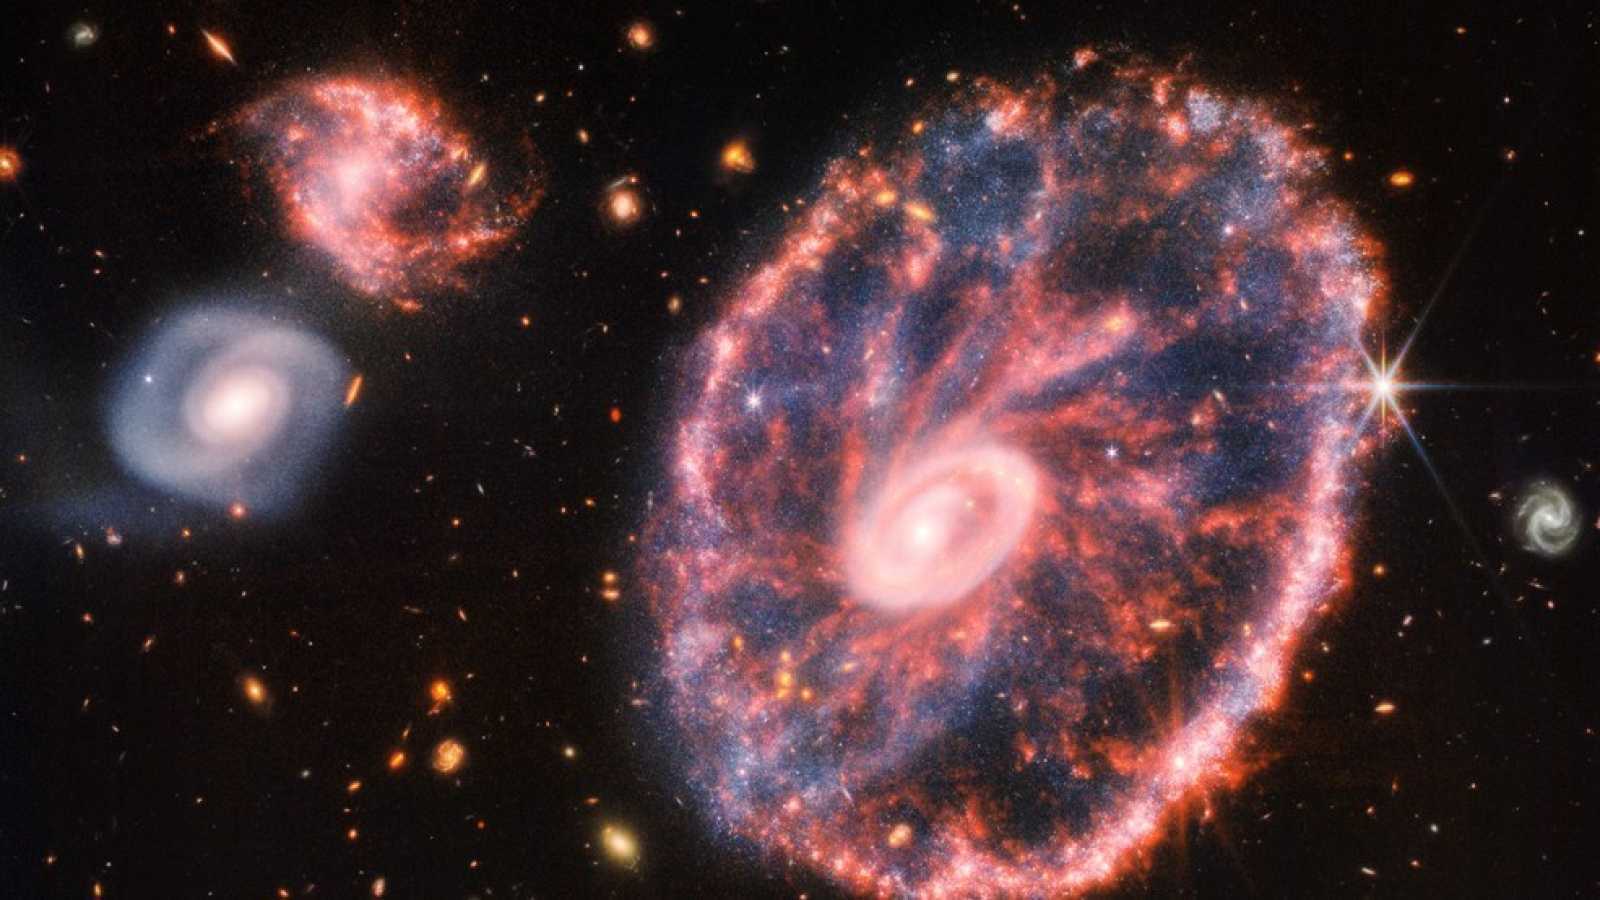 Telescopio James Webb: las mejores fotografías del espacio